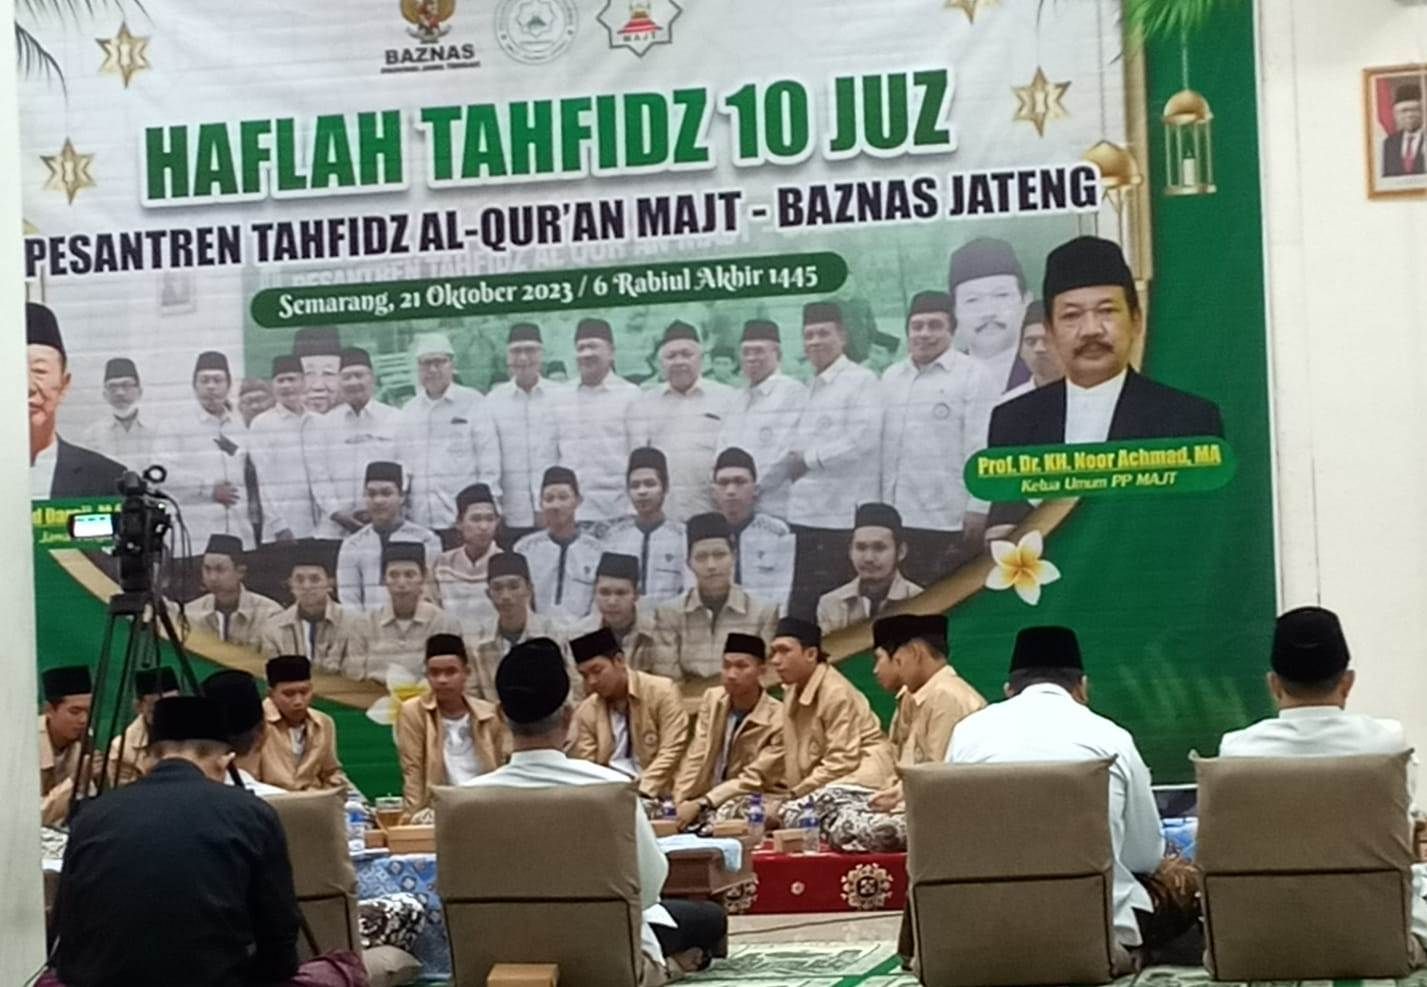 Para santri Pesantren Tahfidz Al-Qur'an MAJT-Baznas Jawa Tengah kembali diuji untuk kedua kalinya pada kegiatan haflah Tahfidz yang diselenggarakan secara sederhana di aula Masjid Agung Jawa Tengah, Sabtu (21 Oktober 2023).